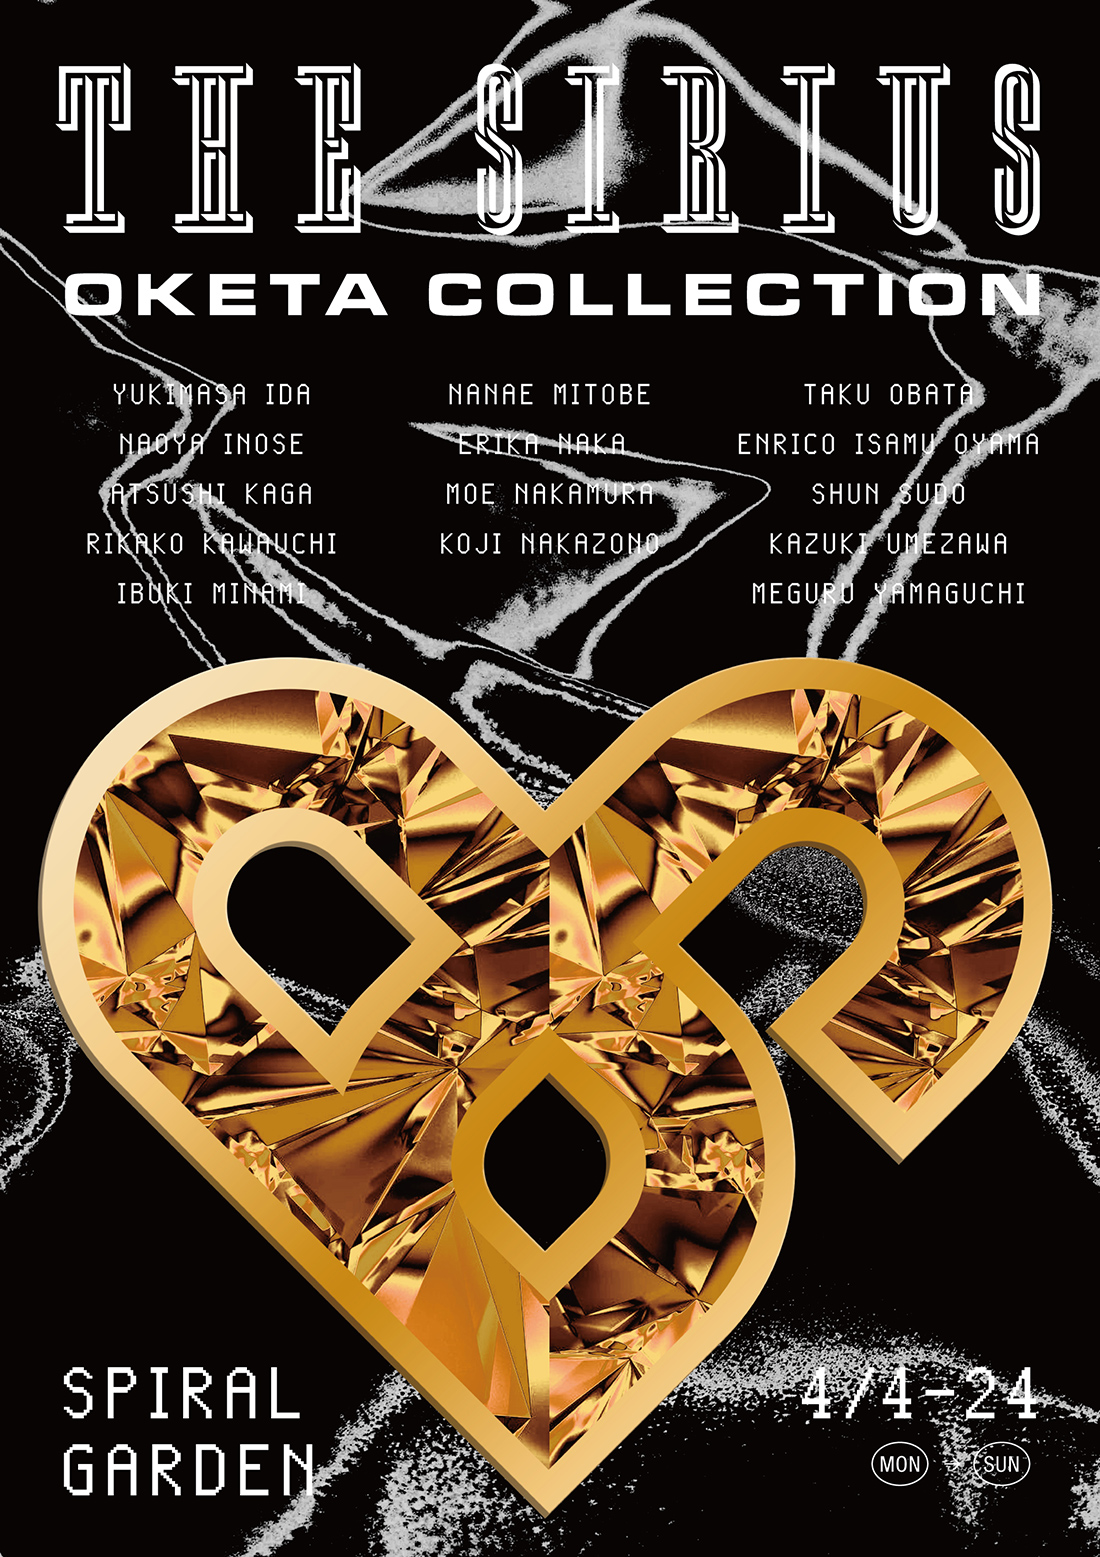 OKETA COLLECTIONN: THE SIRIUS